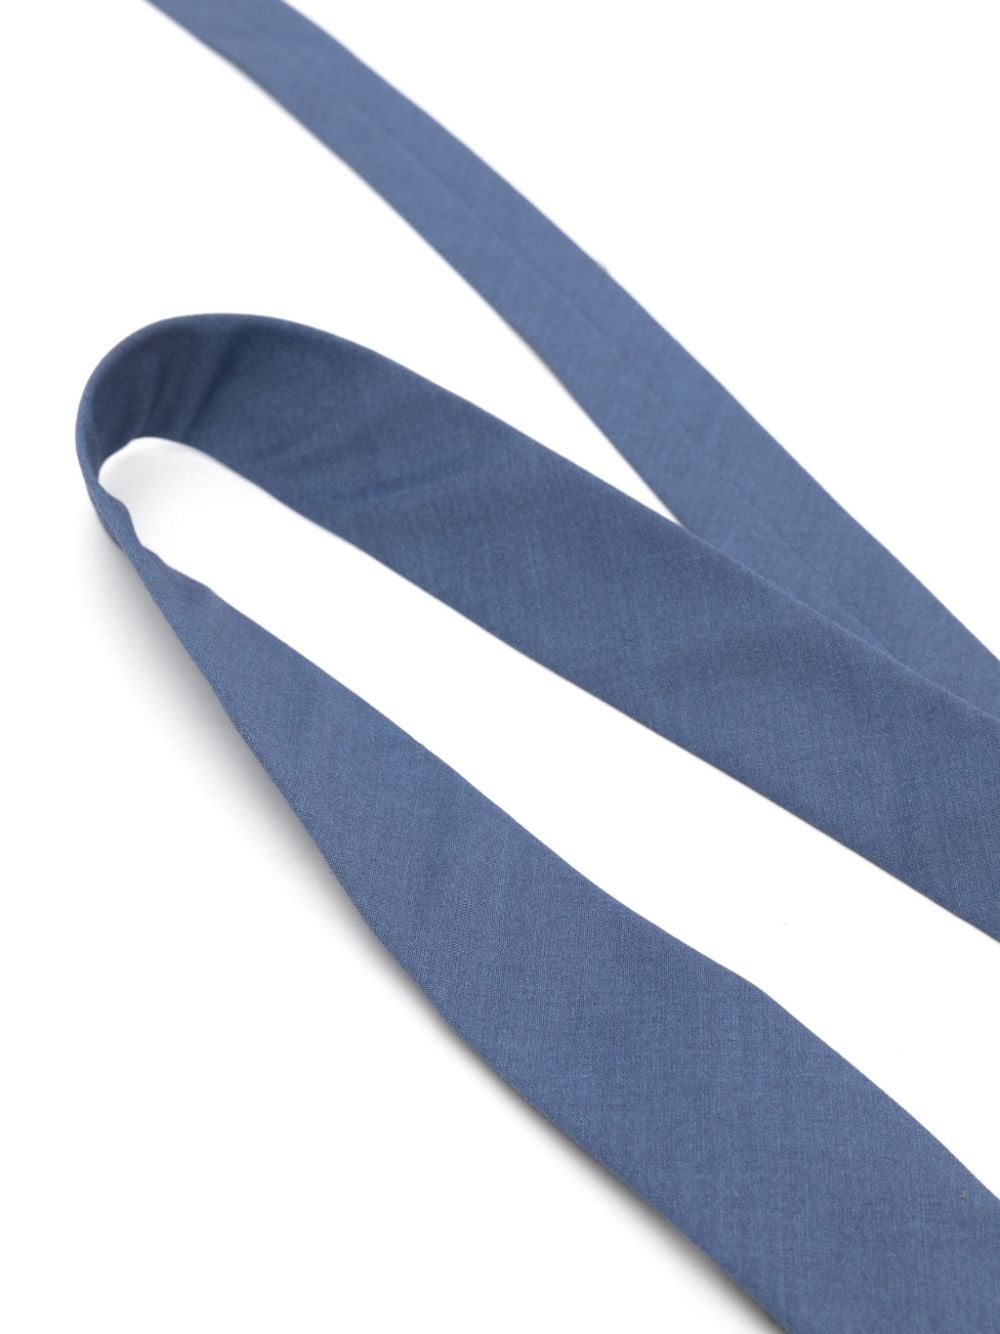 Cravatta blu bambino